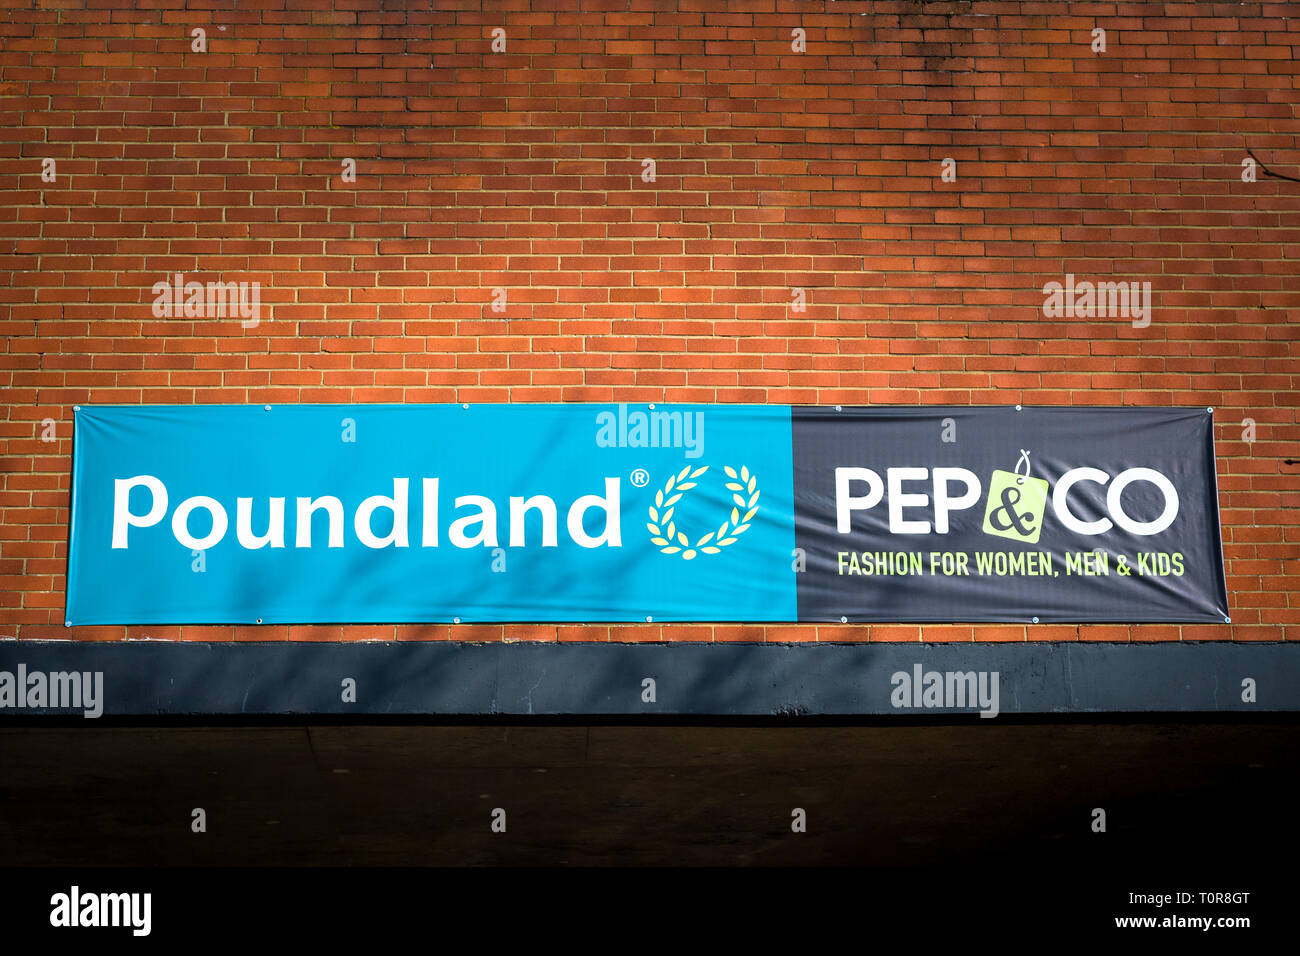 Banner s'étire à travers la paroi arrière d'une unité de vente au détail d'un parking face à l'annonce de nom d'entreprise POUNDLAND et PEP & Co à Devizes Wiltshire, Angleterre Banque D'Images